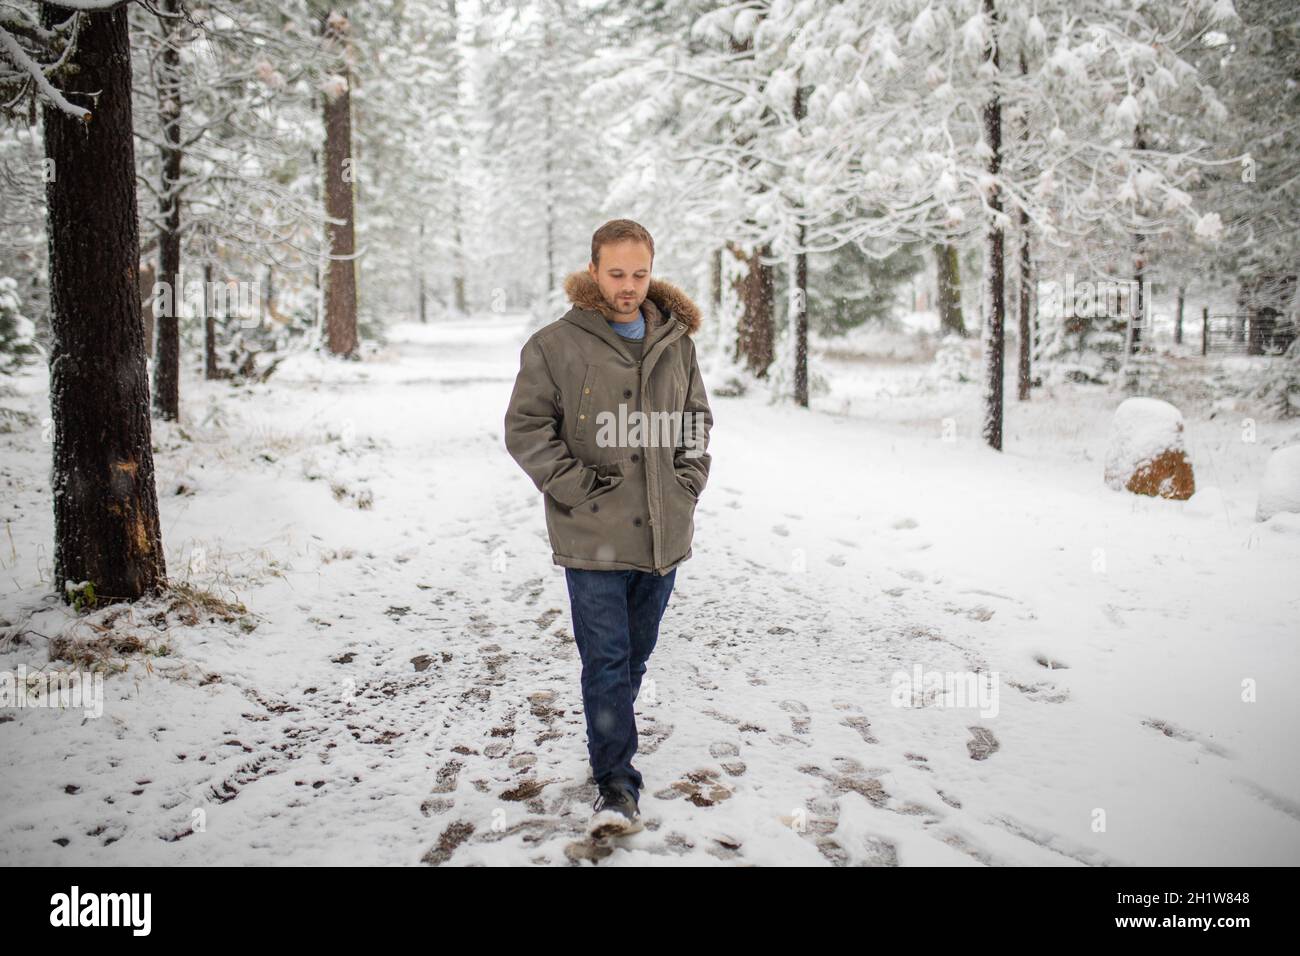 Mann, der ruhig mitten in einem wunderschönen verschneiten Wald spazierengeht. Ernst aussehender Mann, der während des Schneefalls von gefrorenen Kiefern umgeben ist. Erholsamer Winterurlaub Stockfoto